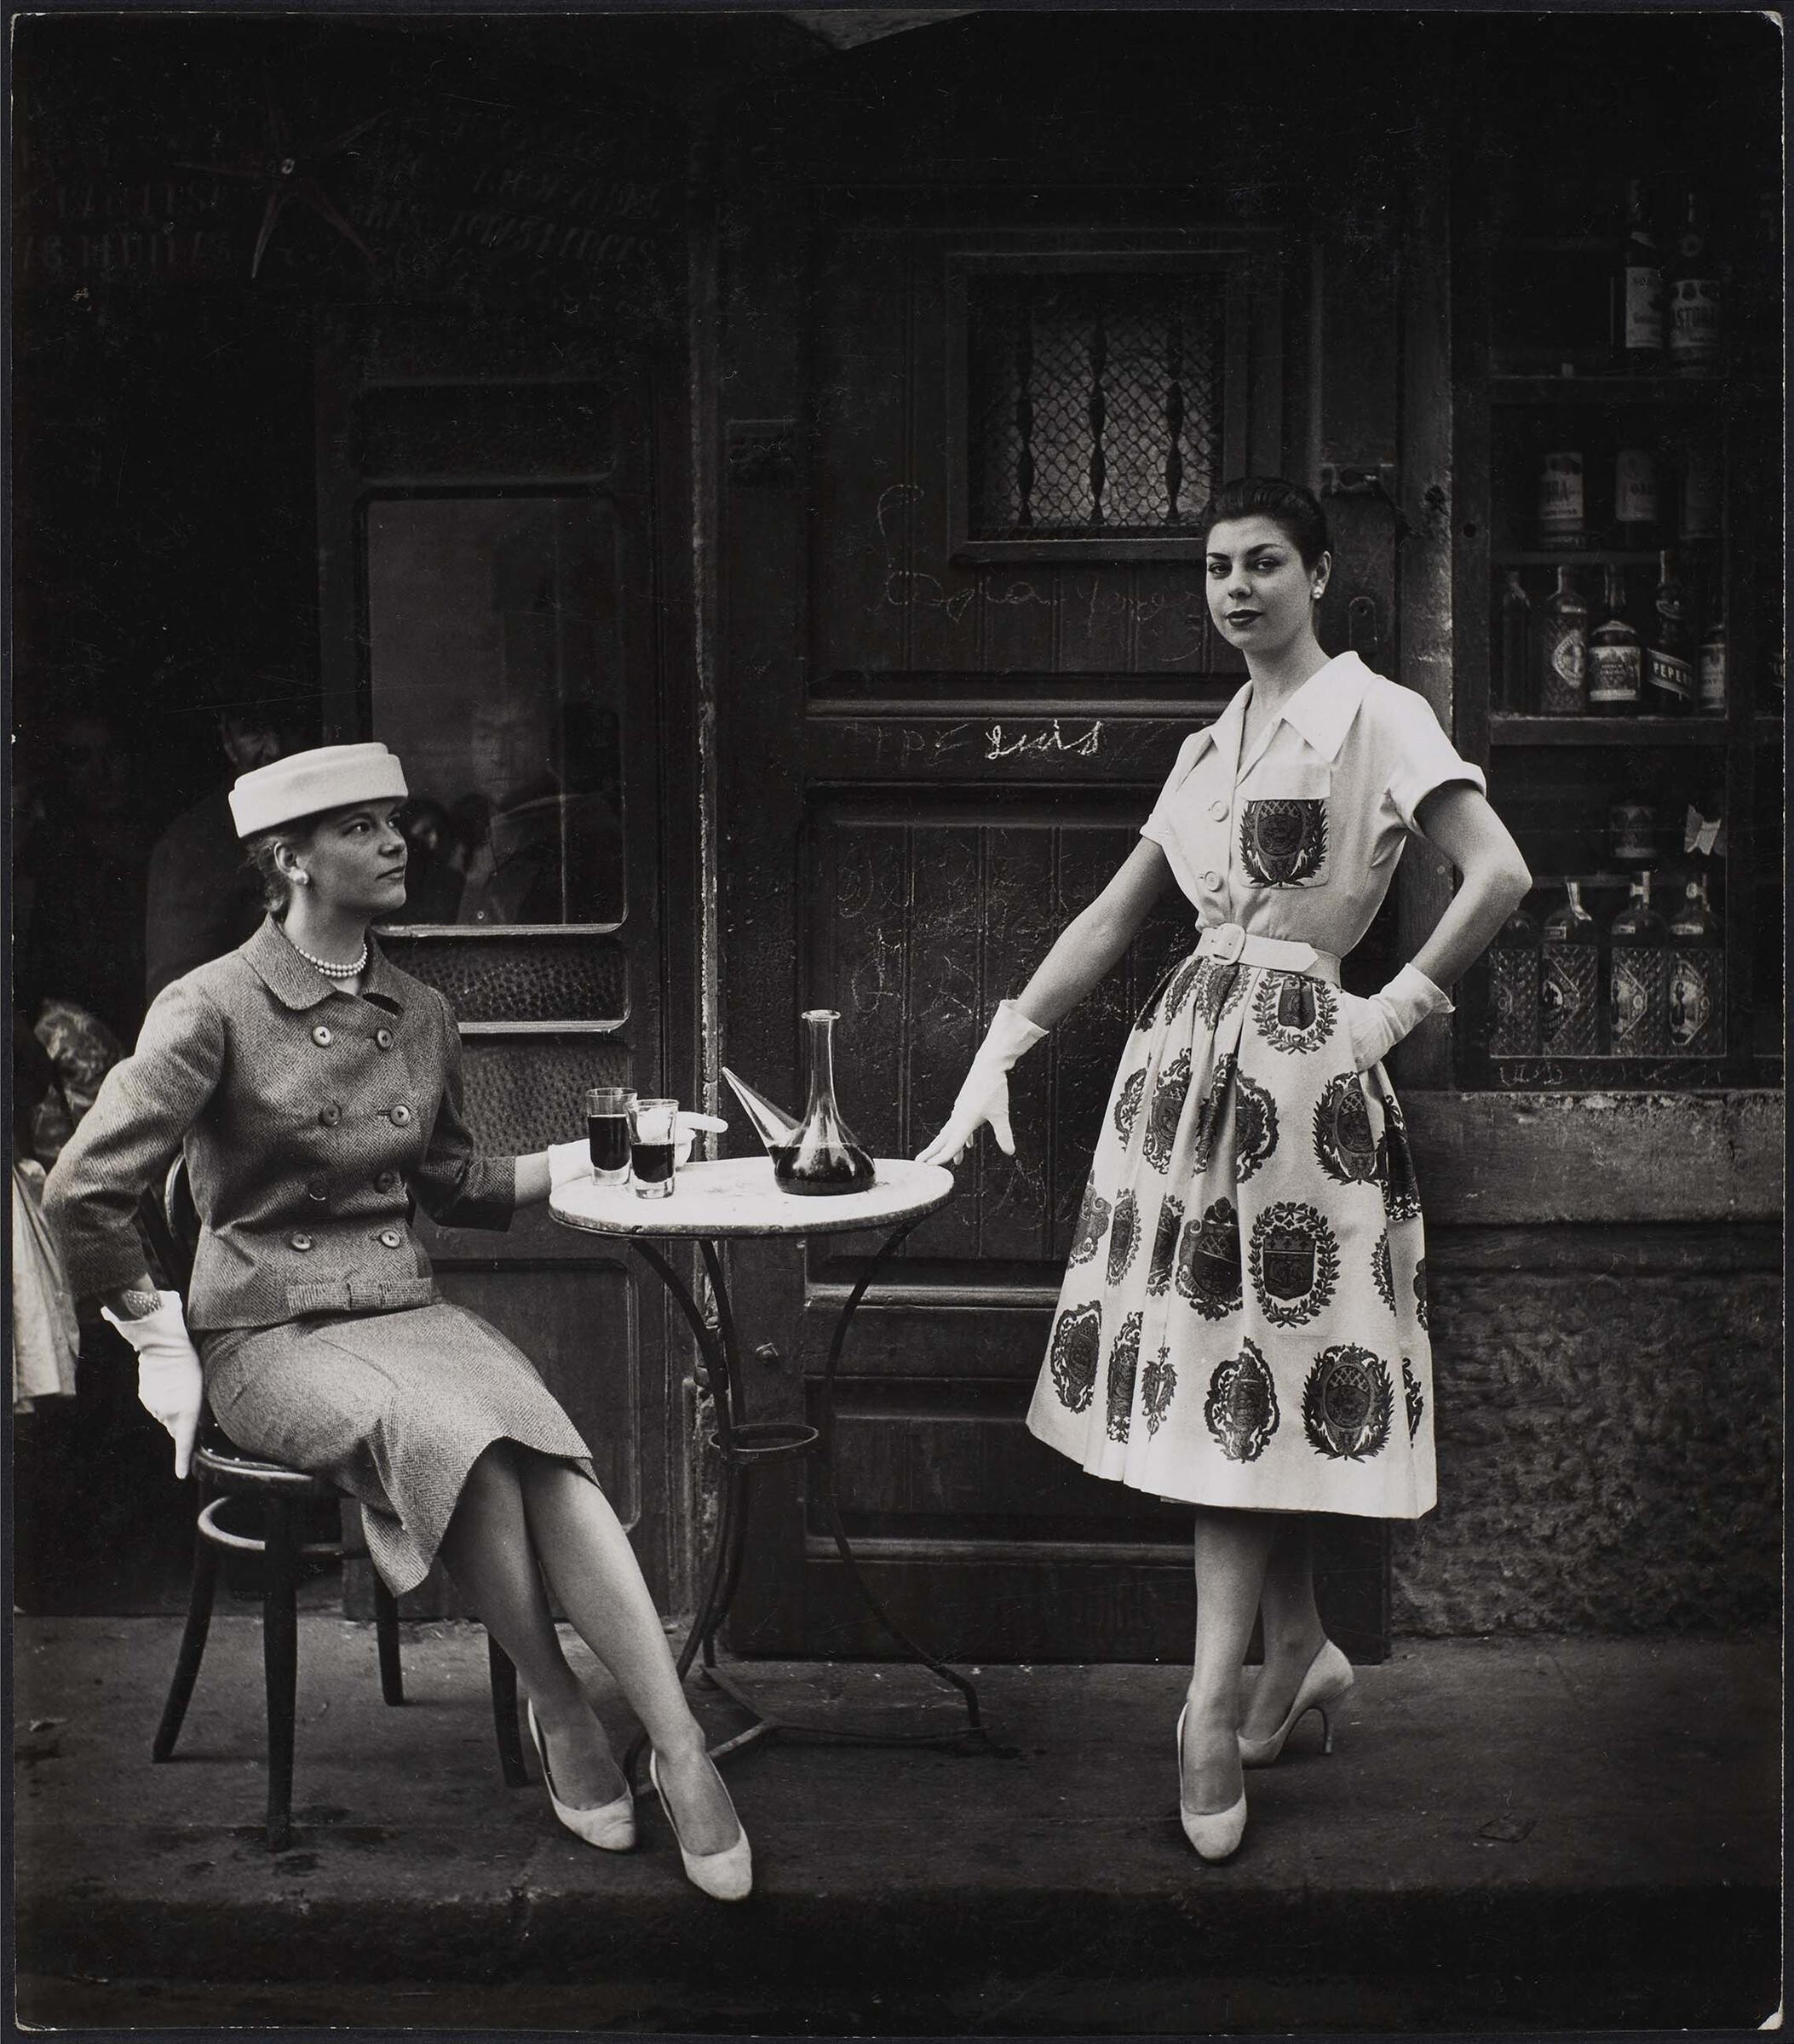 Две модели в баре, Барселона, 1957. Фотограф Ориоль Маспонс